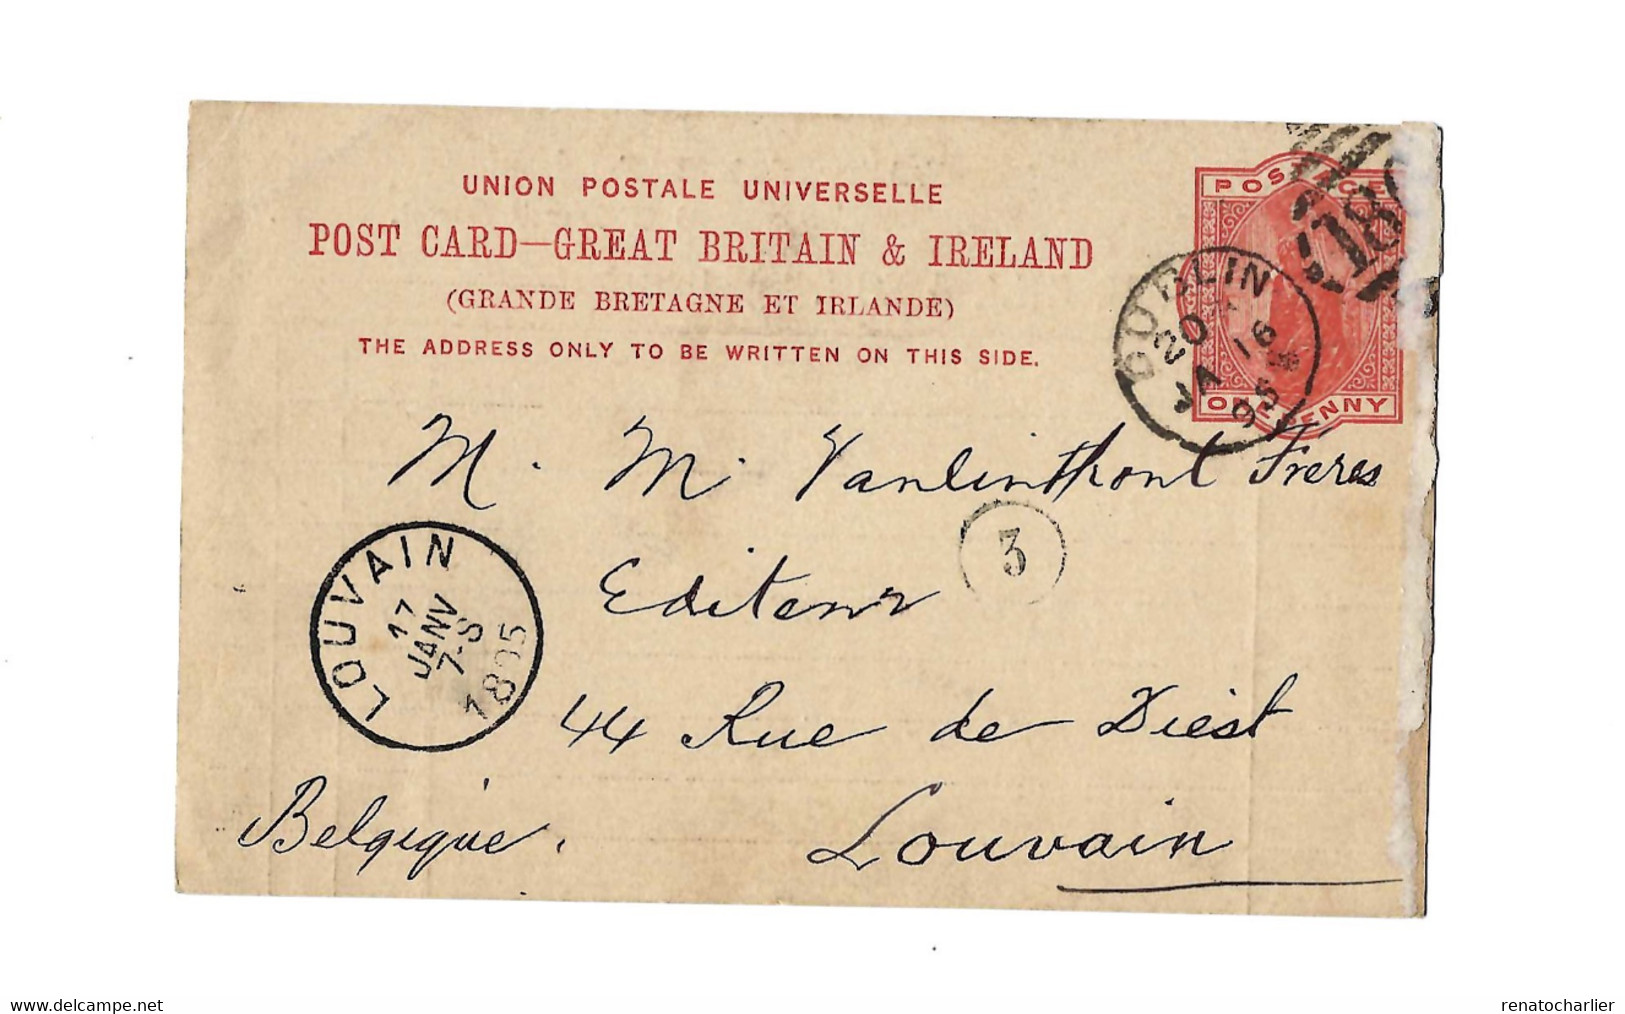 Entier Postal à 1 Penny.Expédié De Dublin à Louvain (Belgique) - Postal Stationery